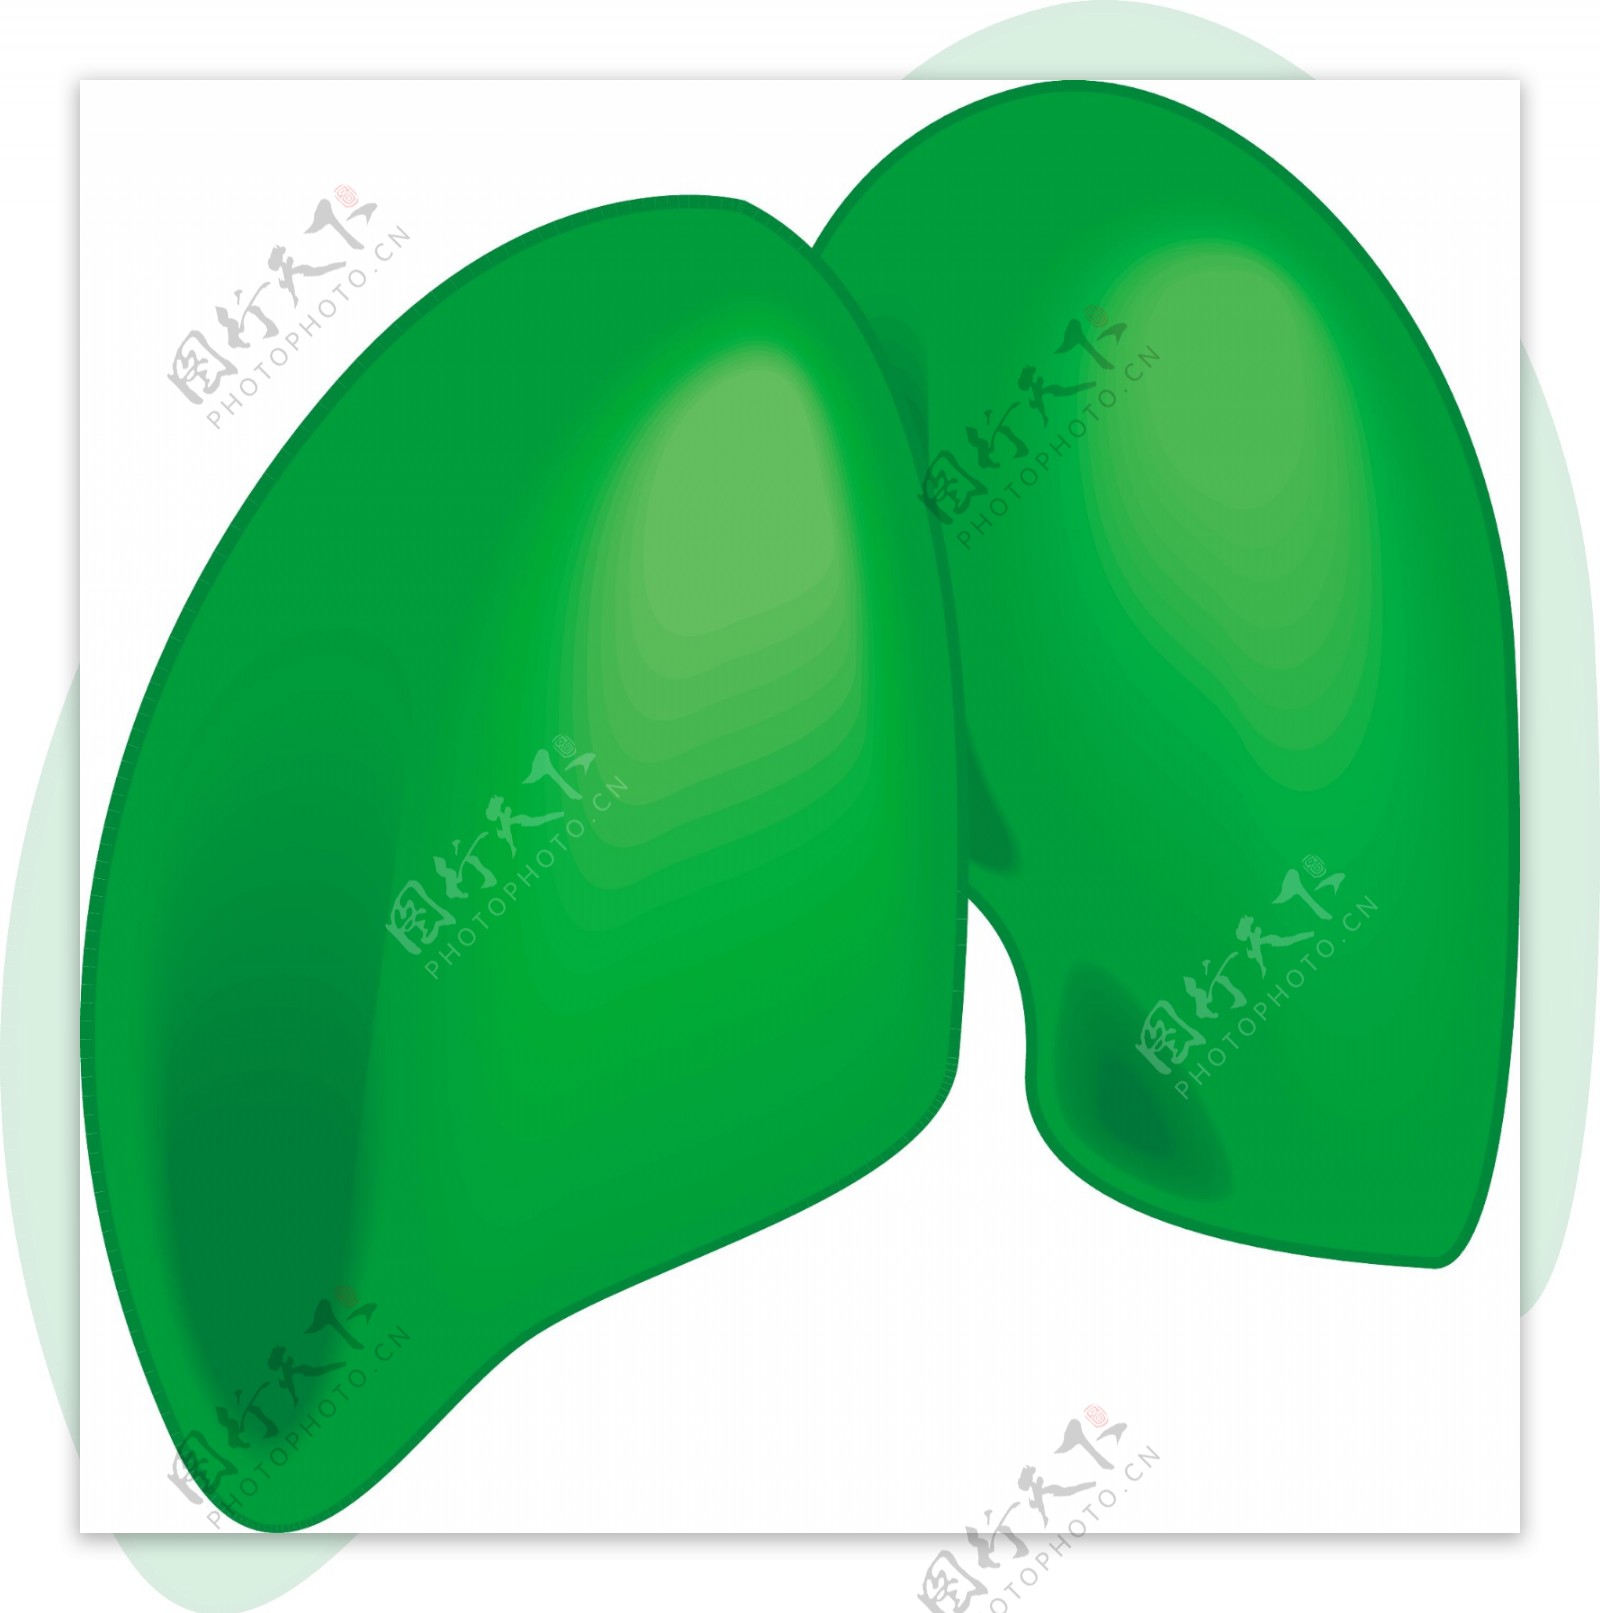 绿色肺模型矢量图AI